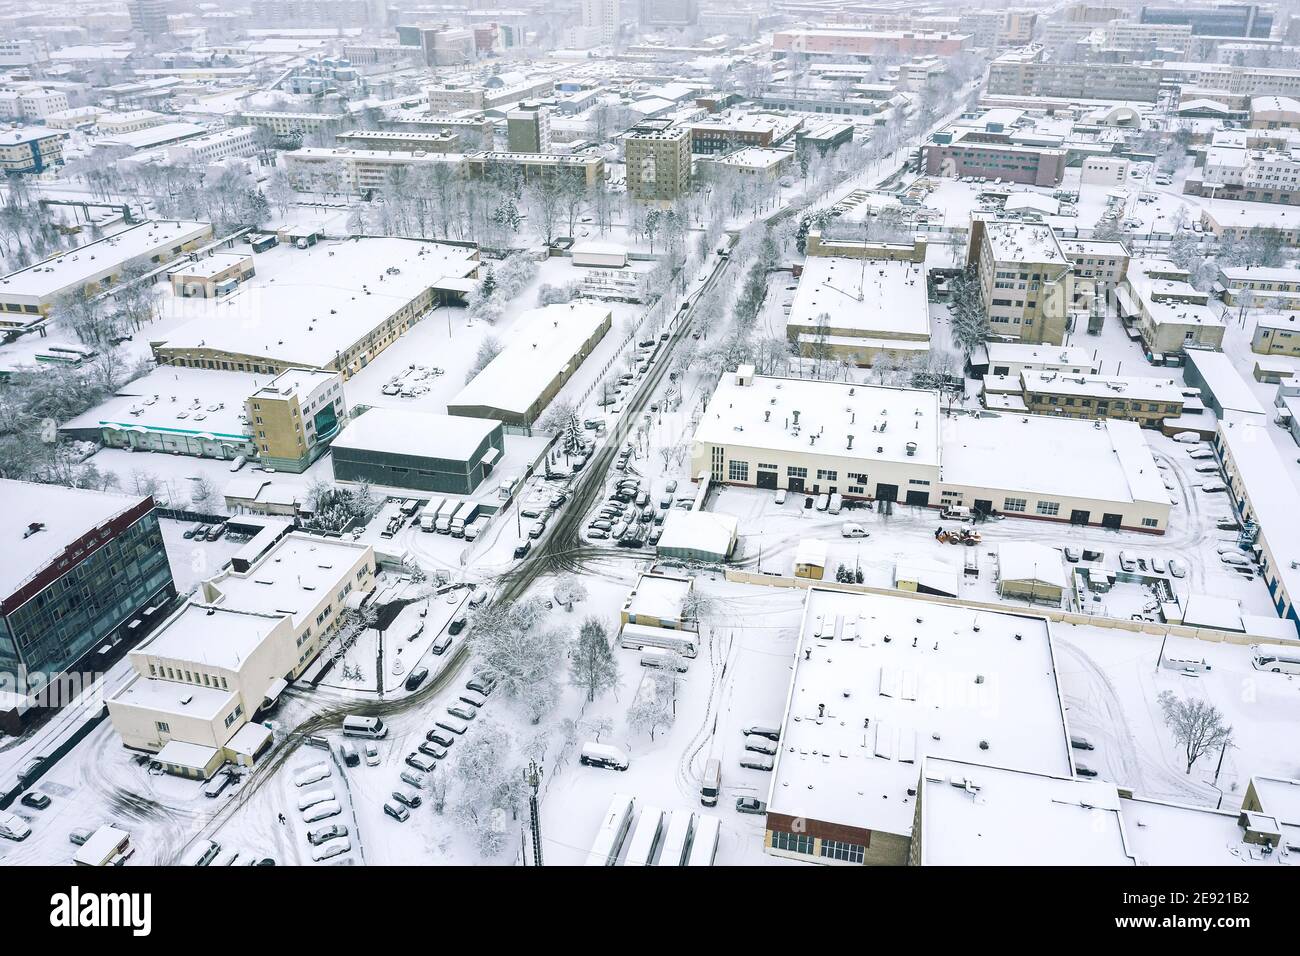 vista panoramica aerea della zona industriale della città in nebbia giorno d'inverno. fotografia di droni Foto Stock